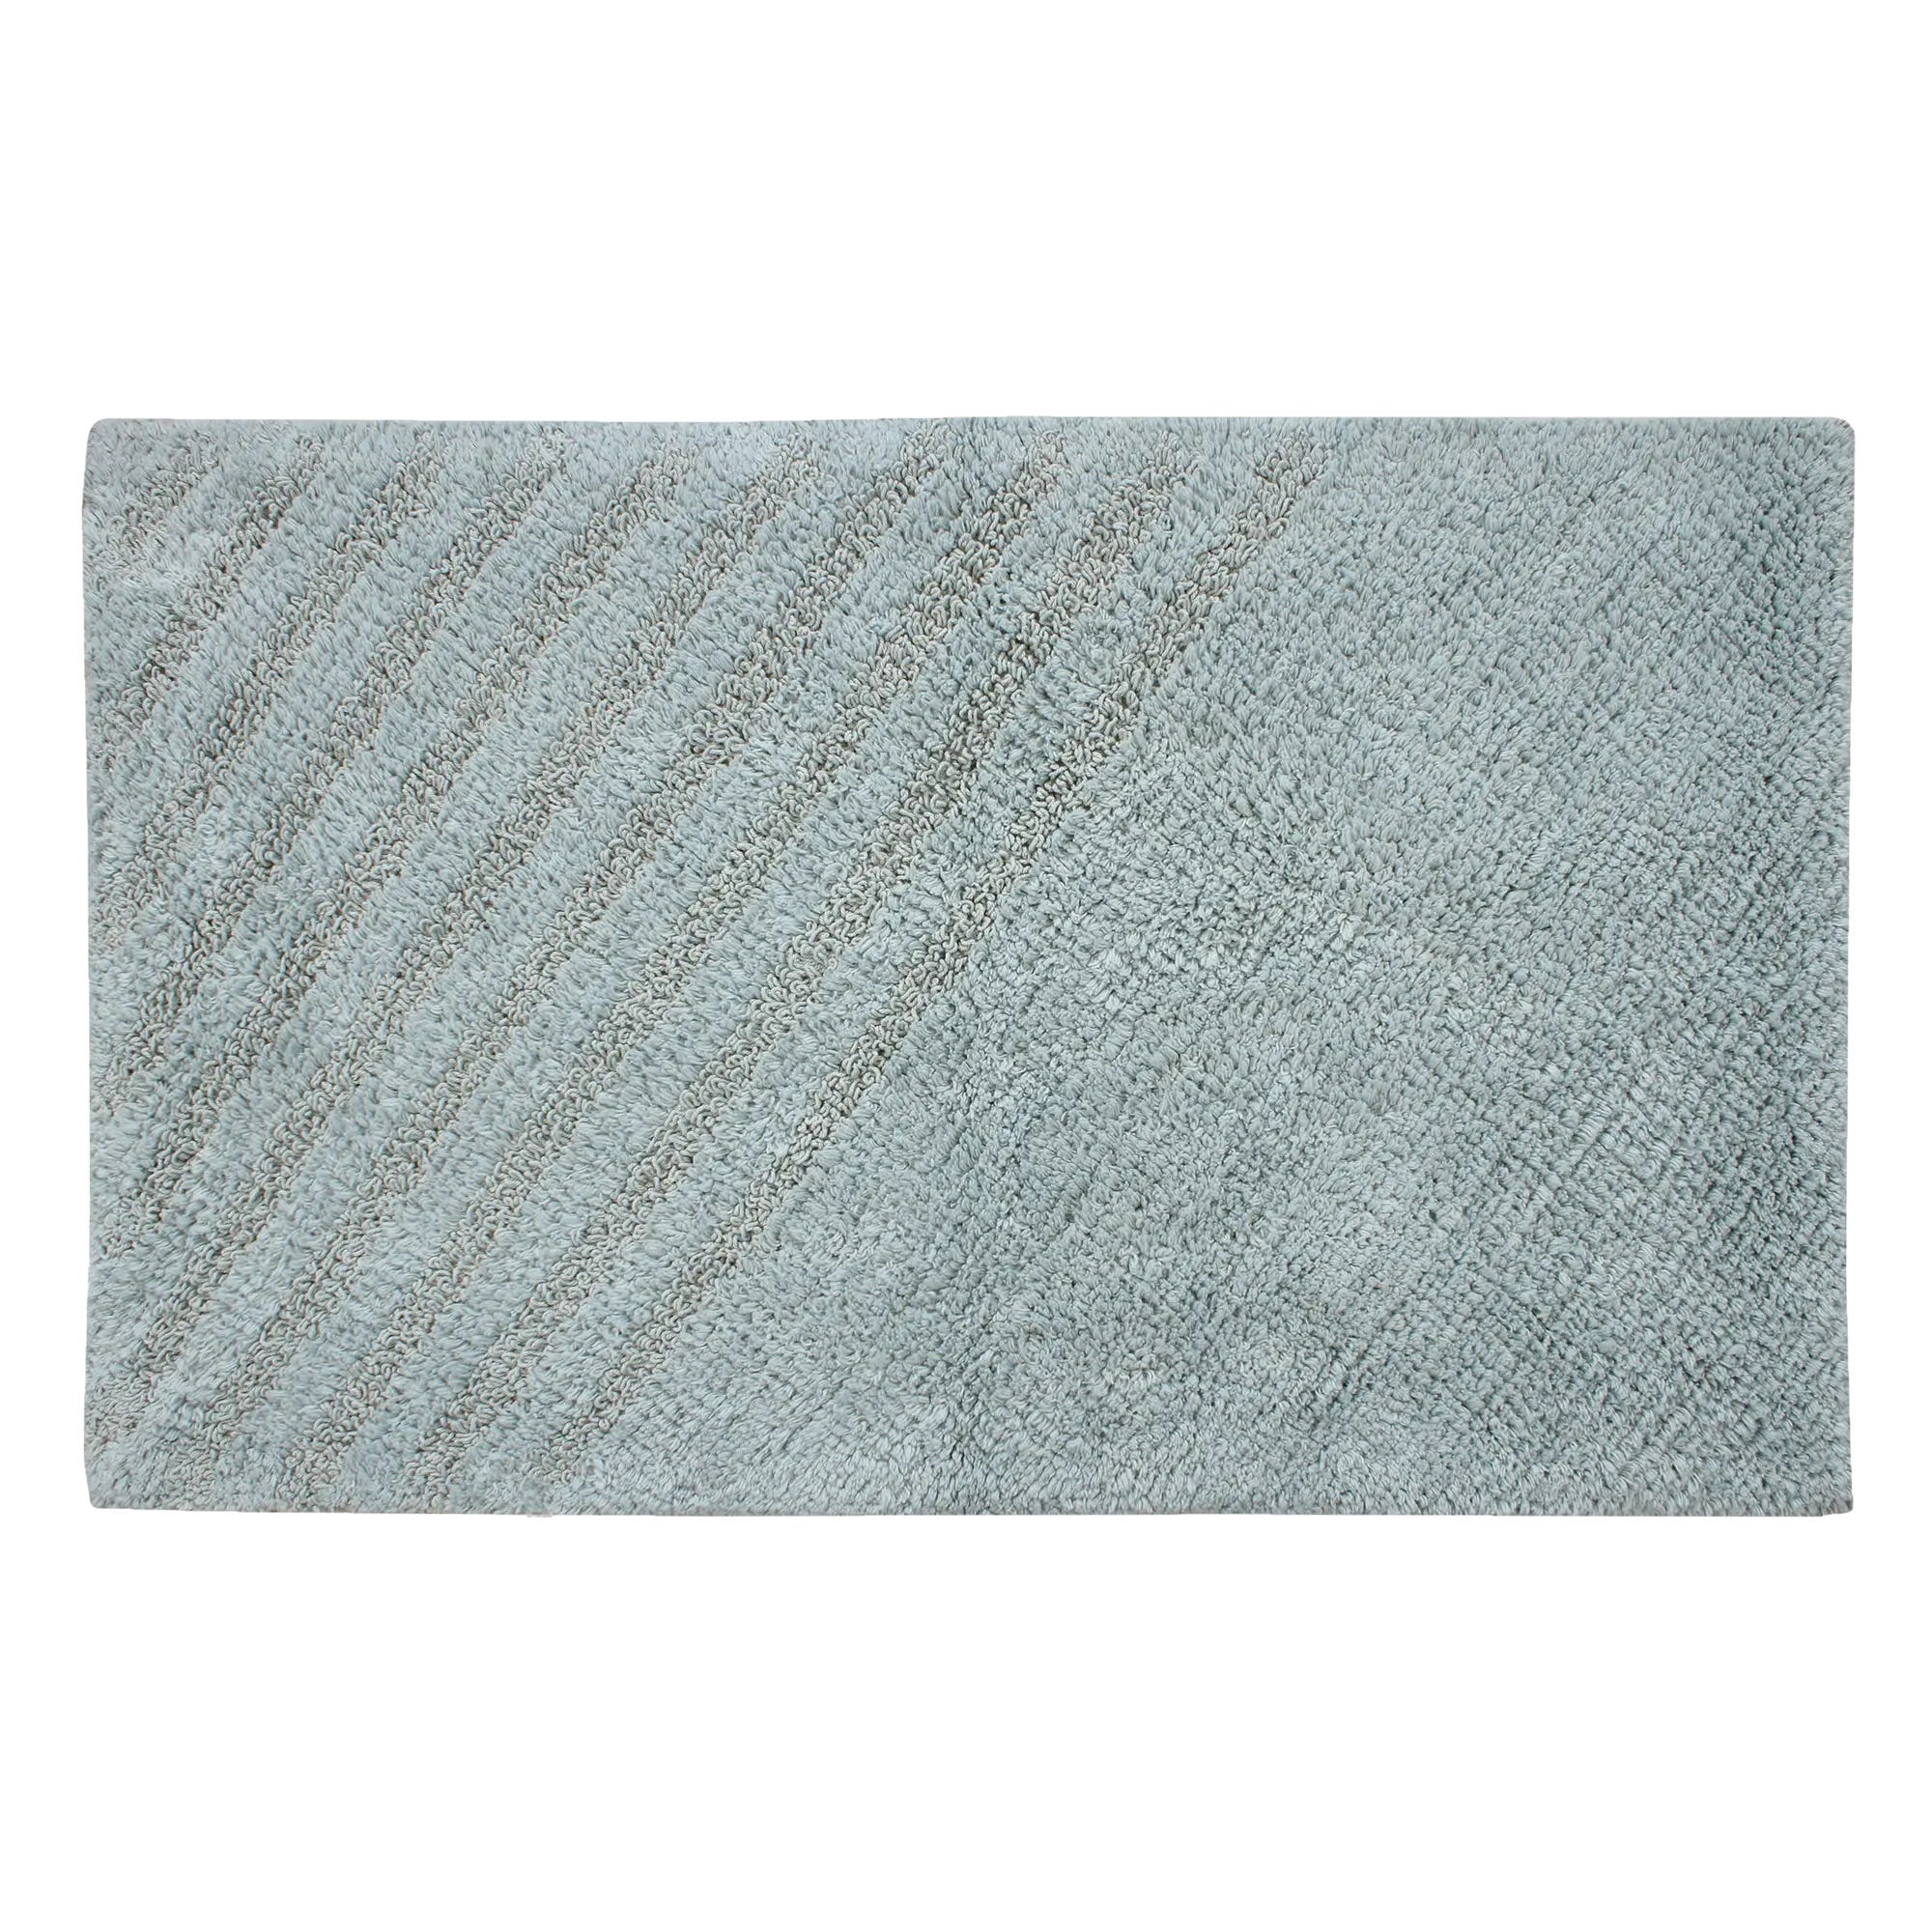 Tappeto bagno rettangolare Remix granit in cotone grigio 80 x 50 cmØ 94 cm